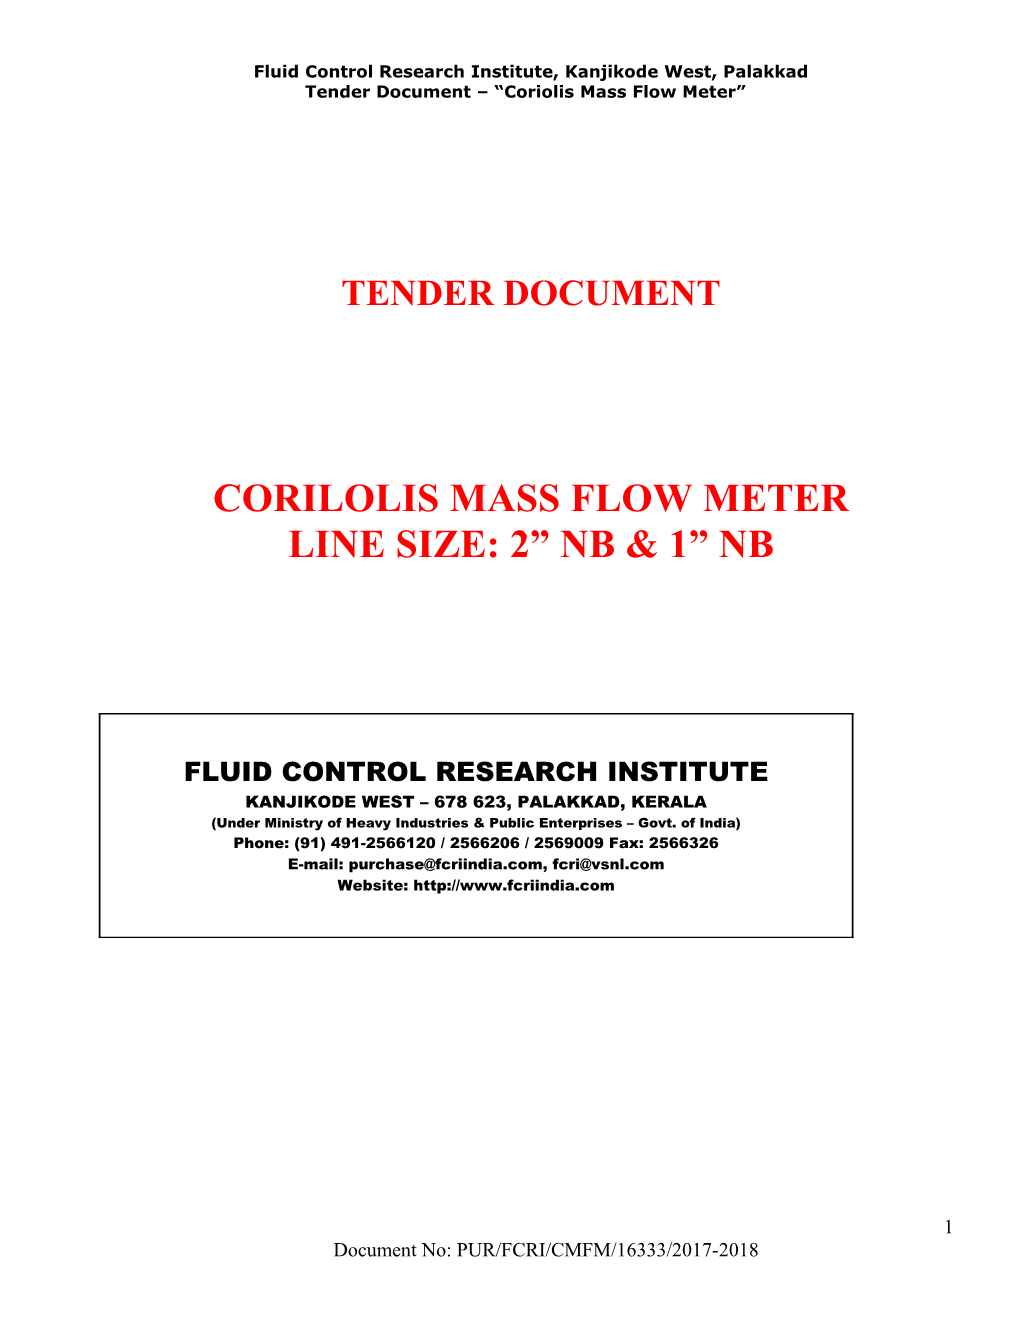 Tender Document Coriolis Mass Flow Meter